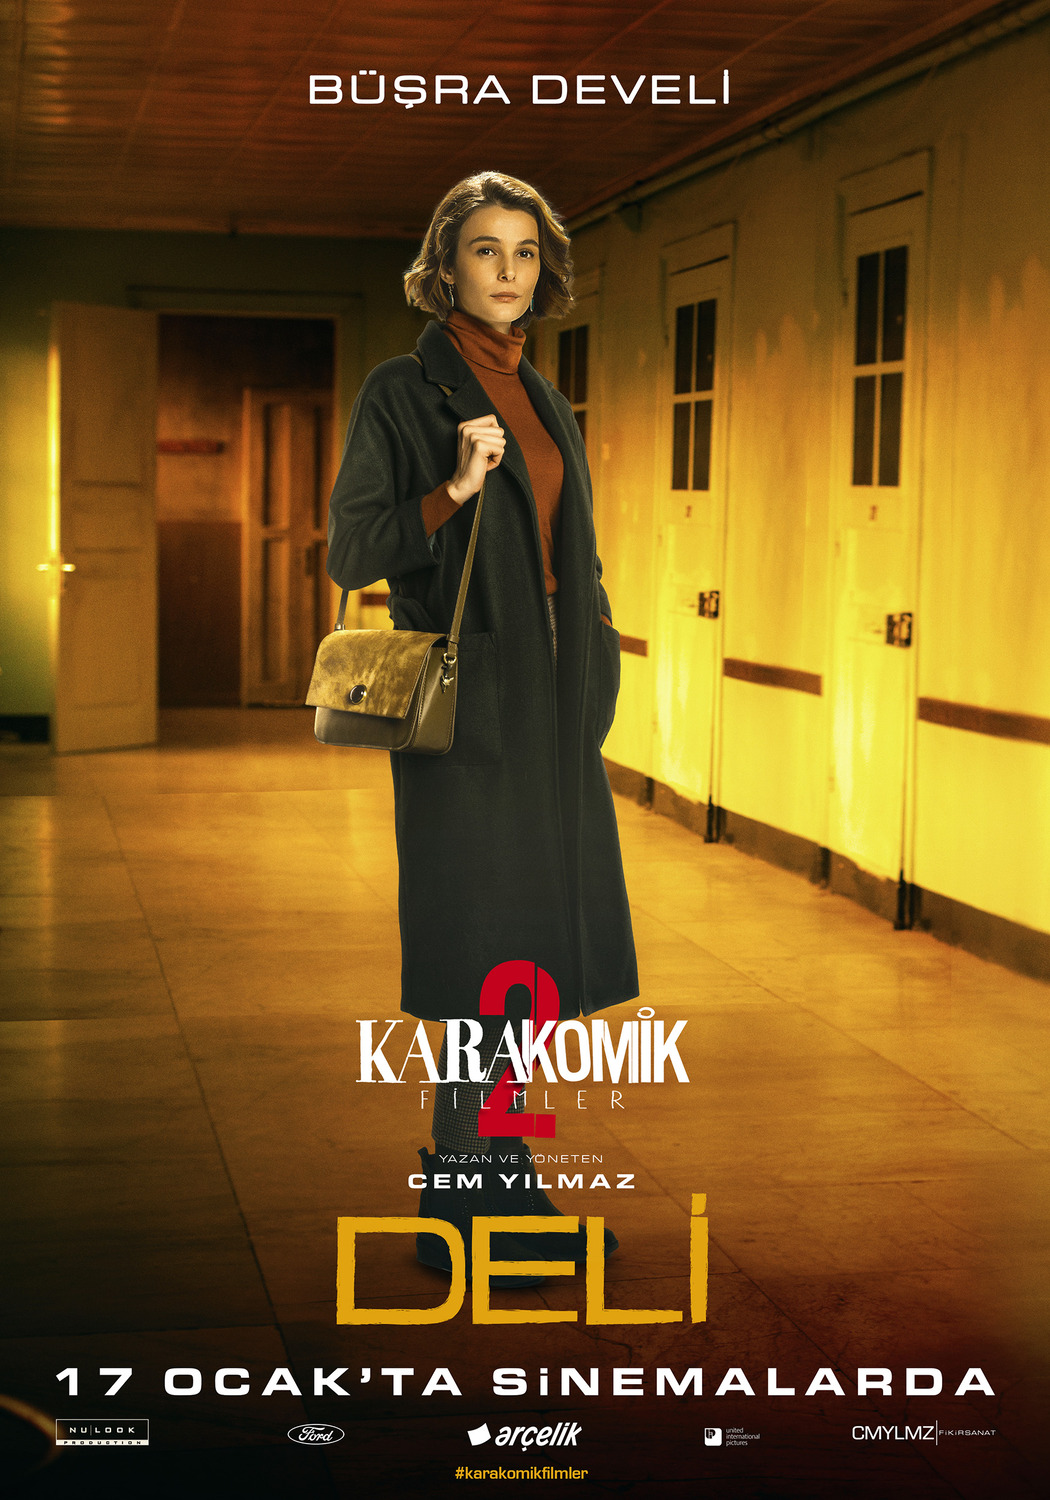 Extra Large Movie Poster Image for Karakomik Filmler: Deli (#2 of 6)